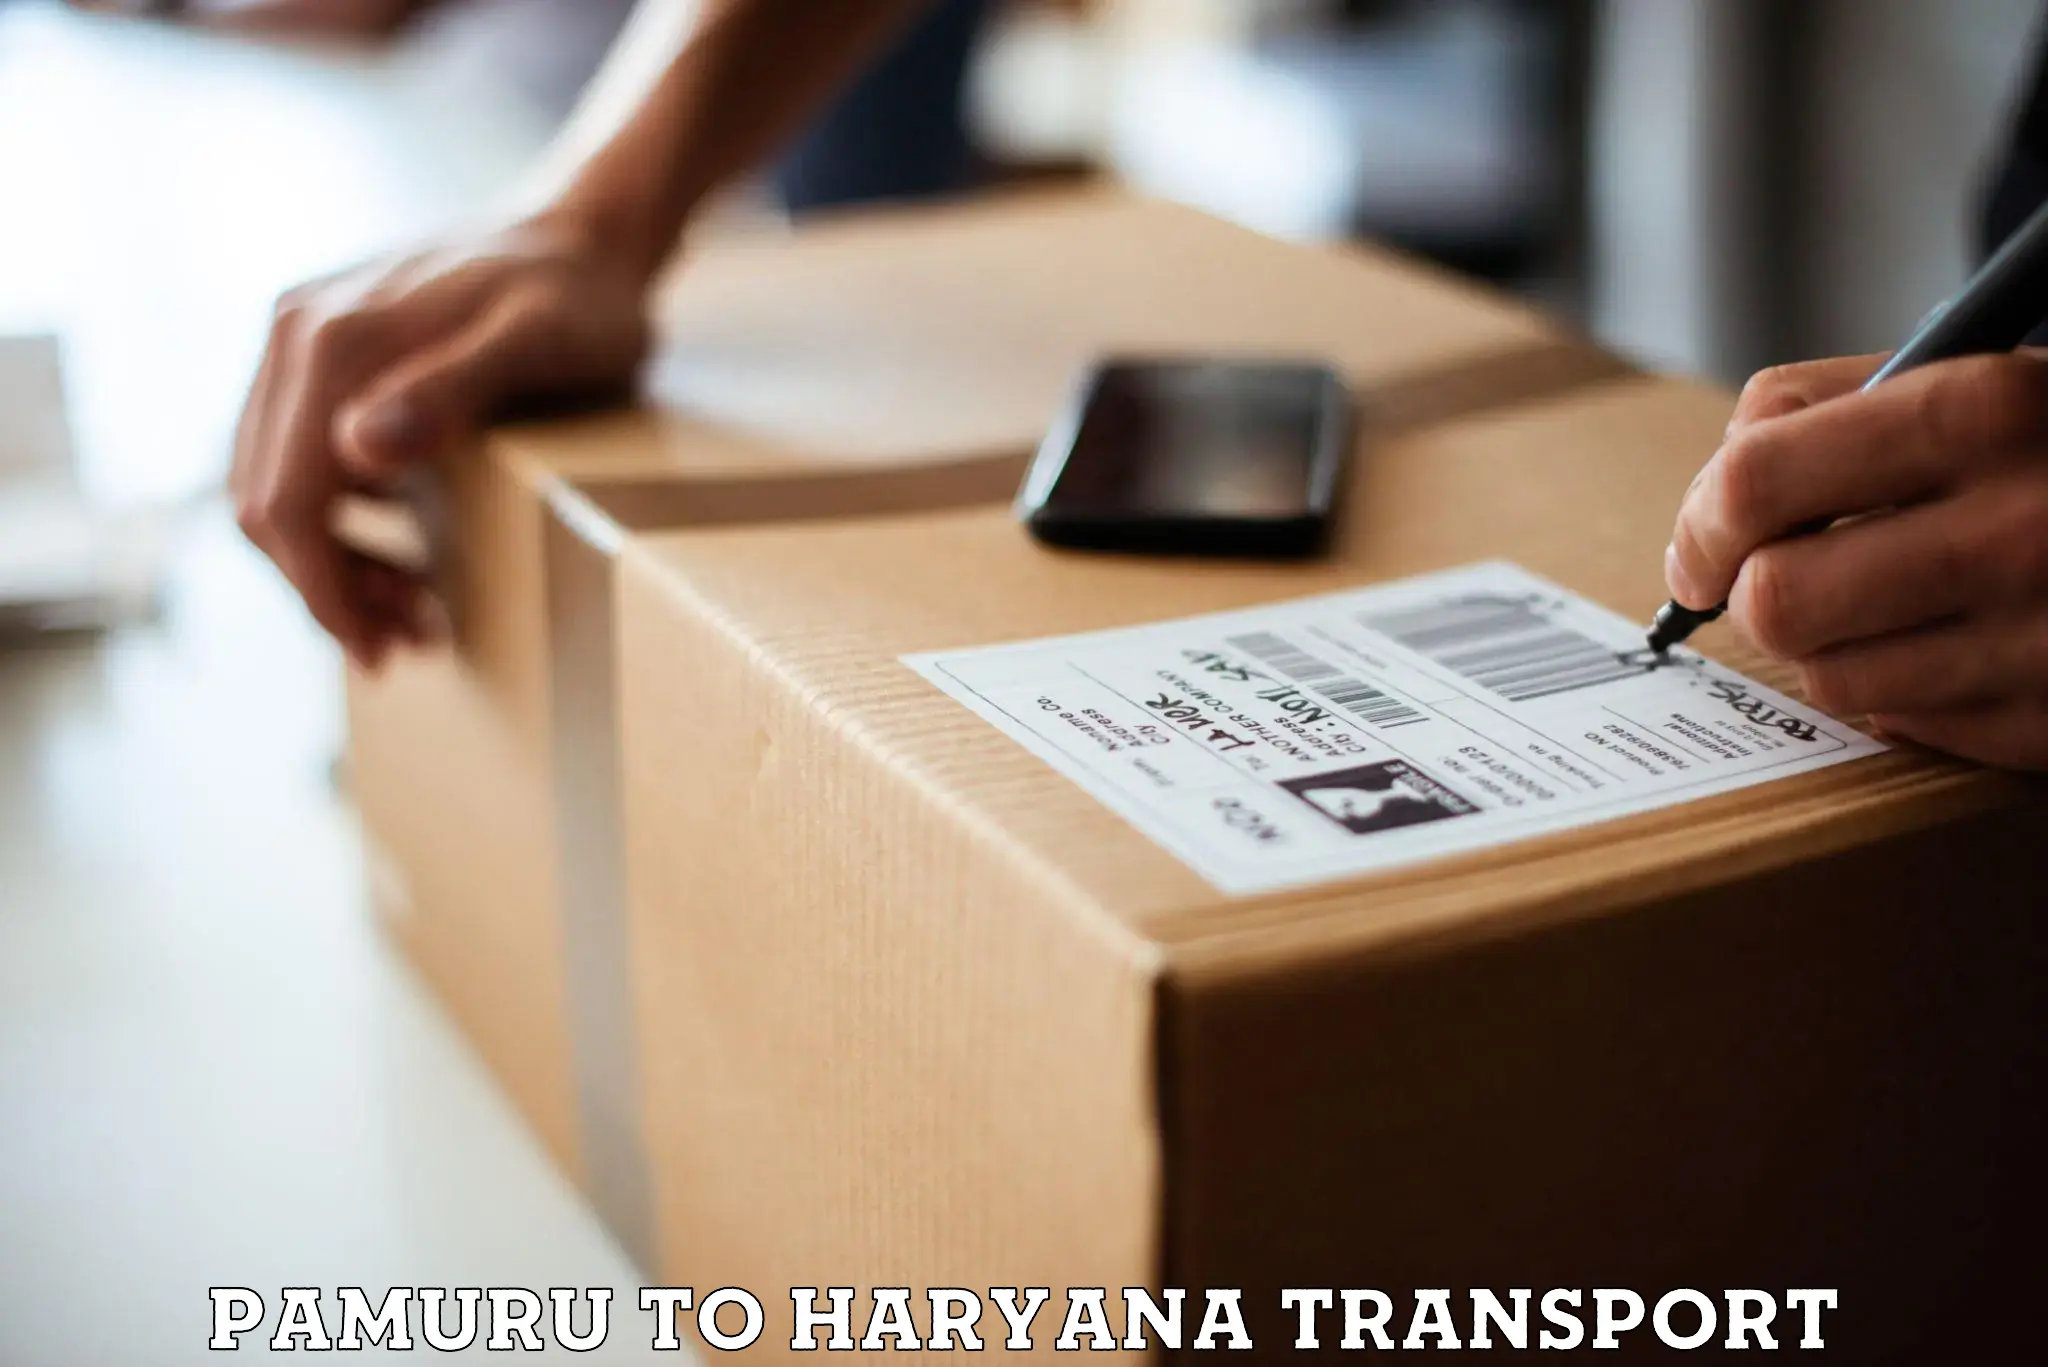 Furniture transport service Pamuru to Odhan